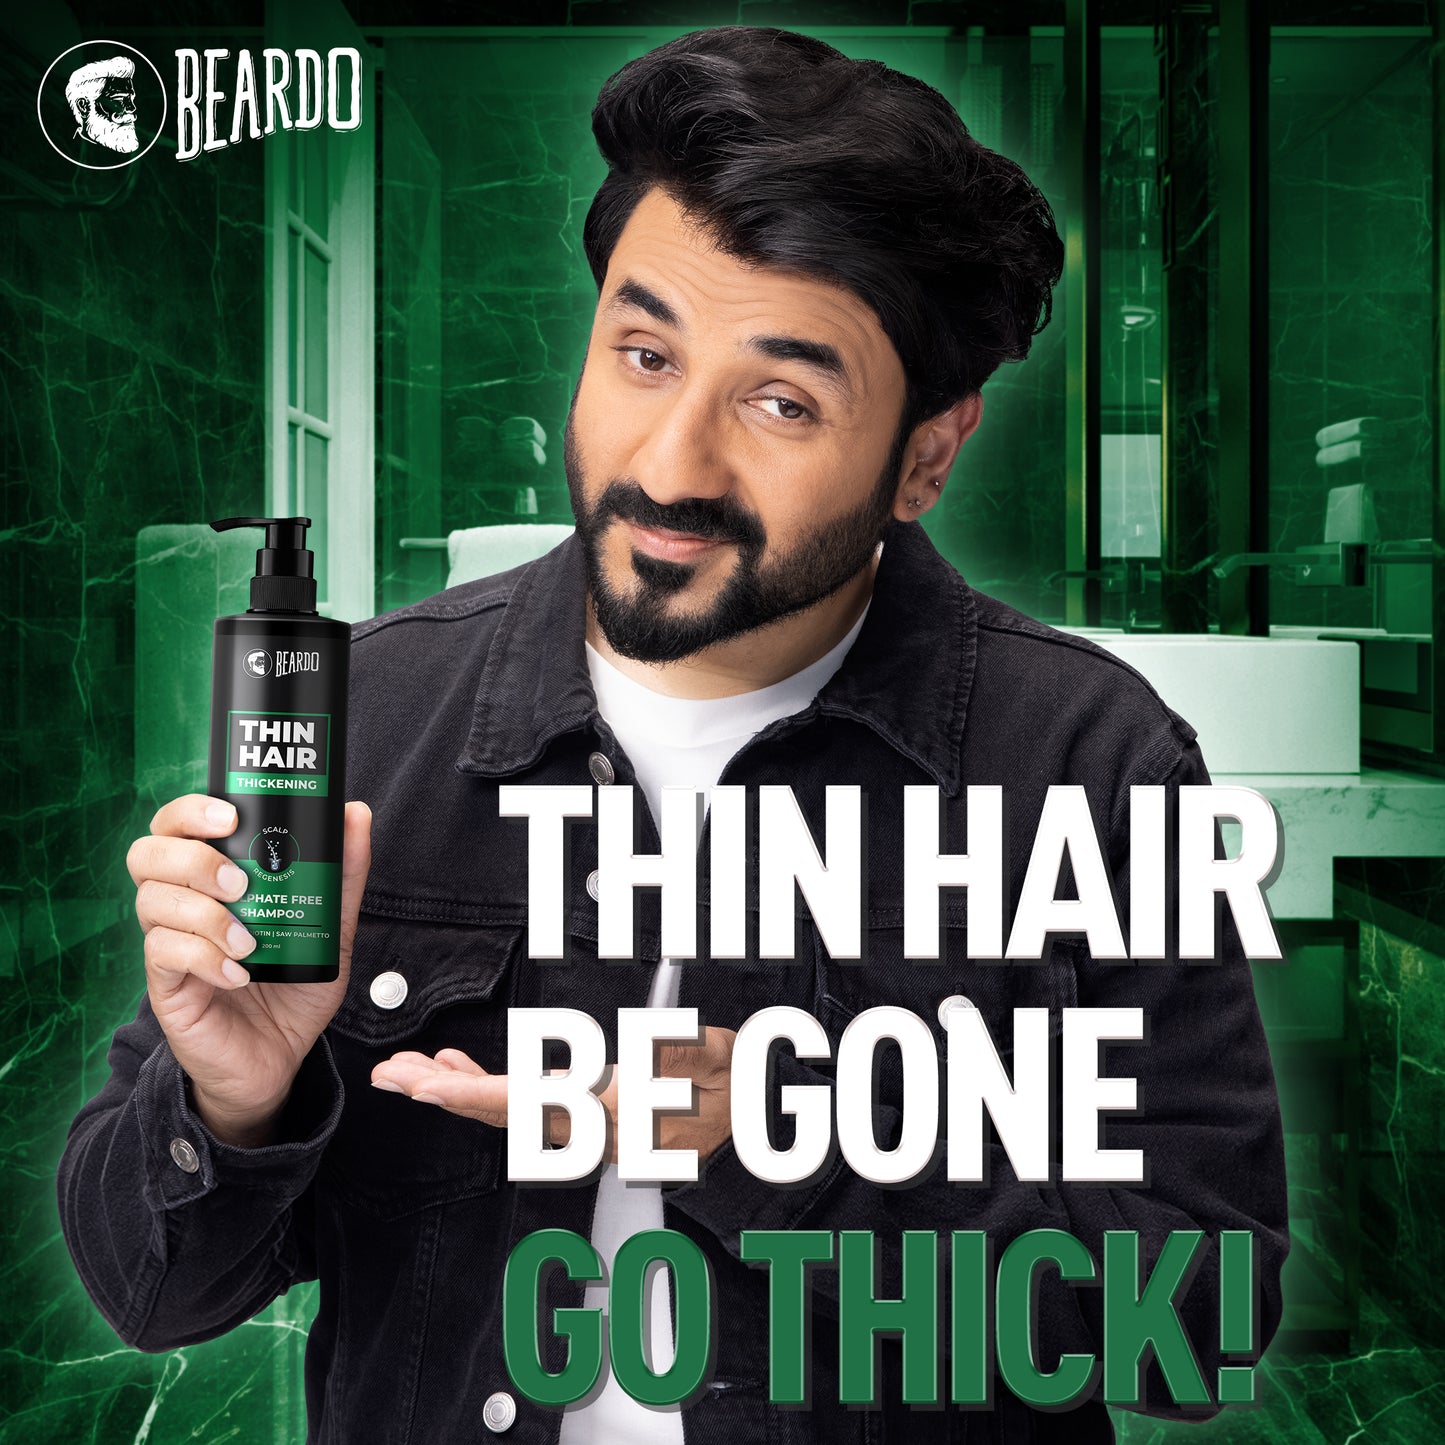 Beardo Hair Thickening Combo